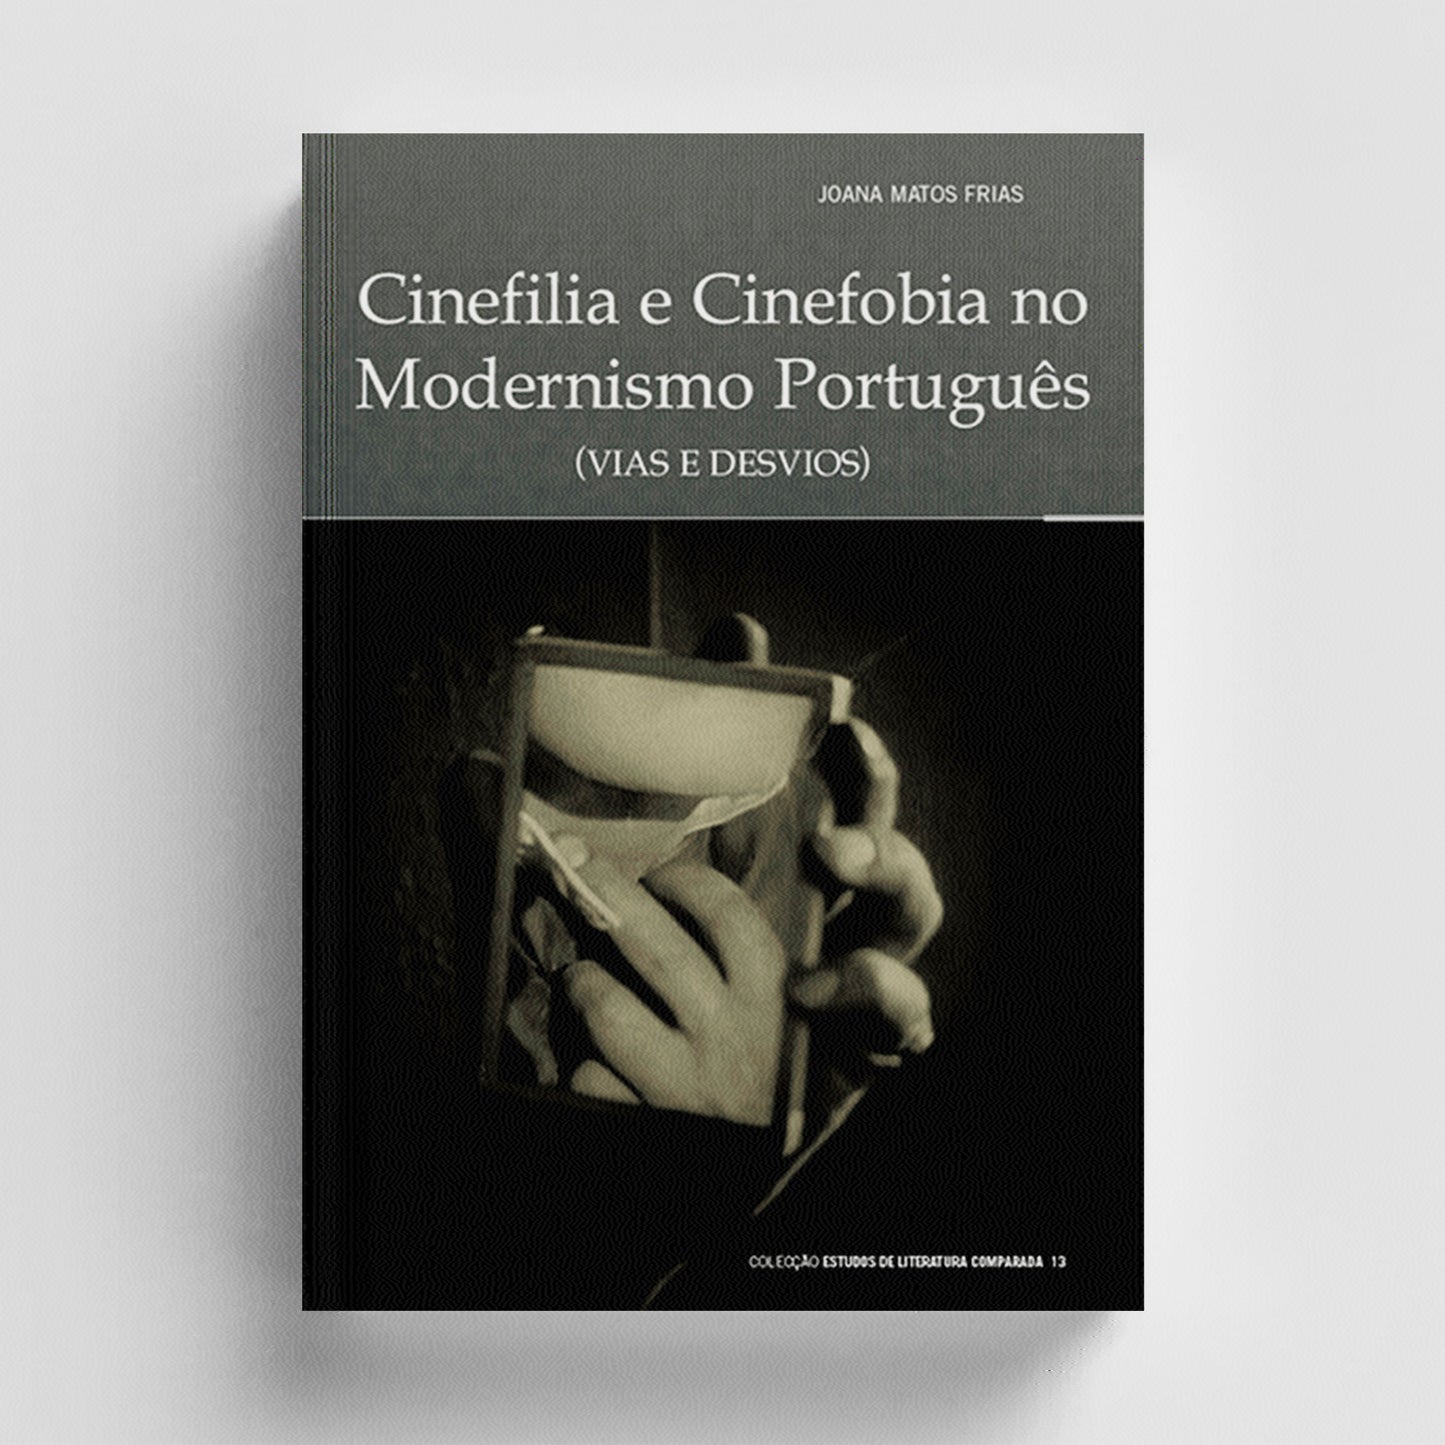 Cinefilia e Cinefobia no Modernismo Português